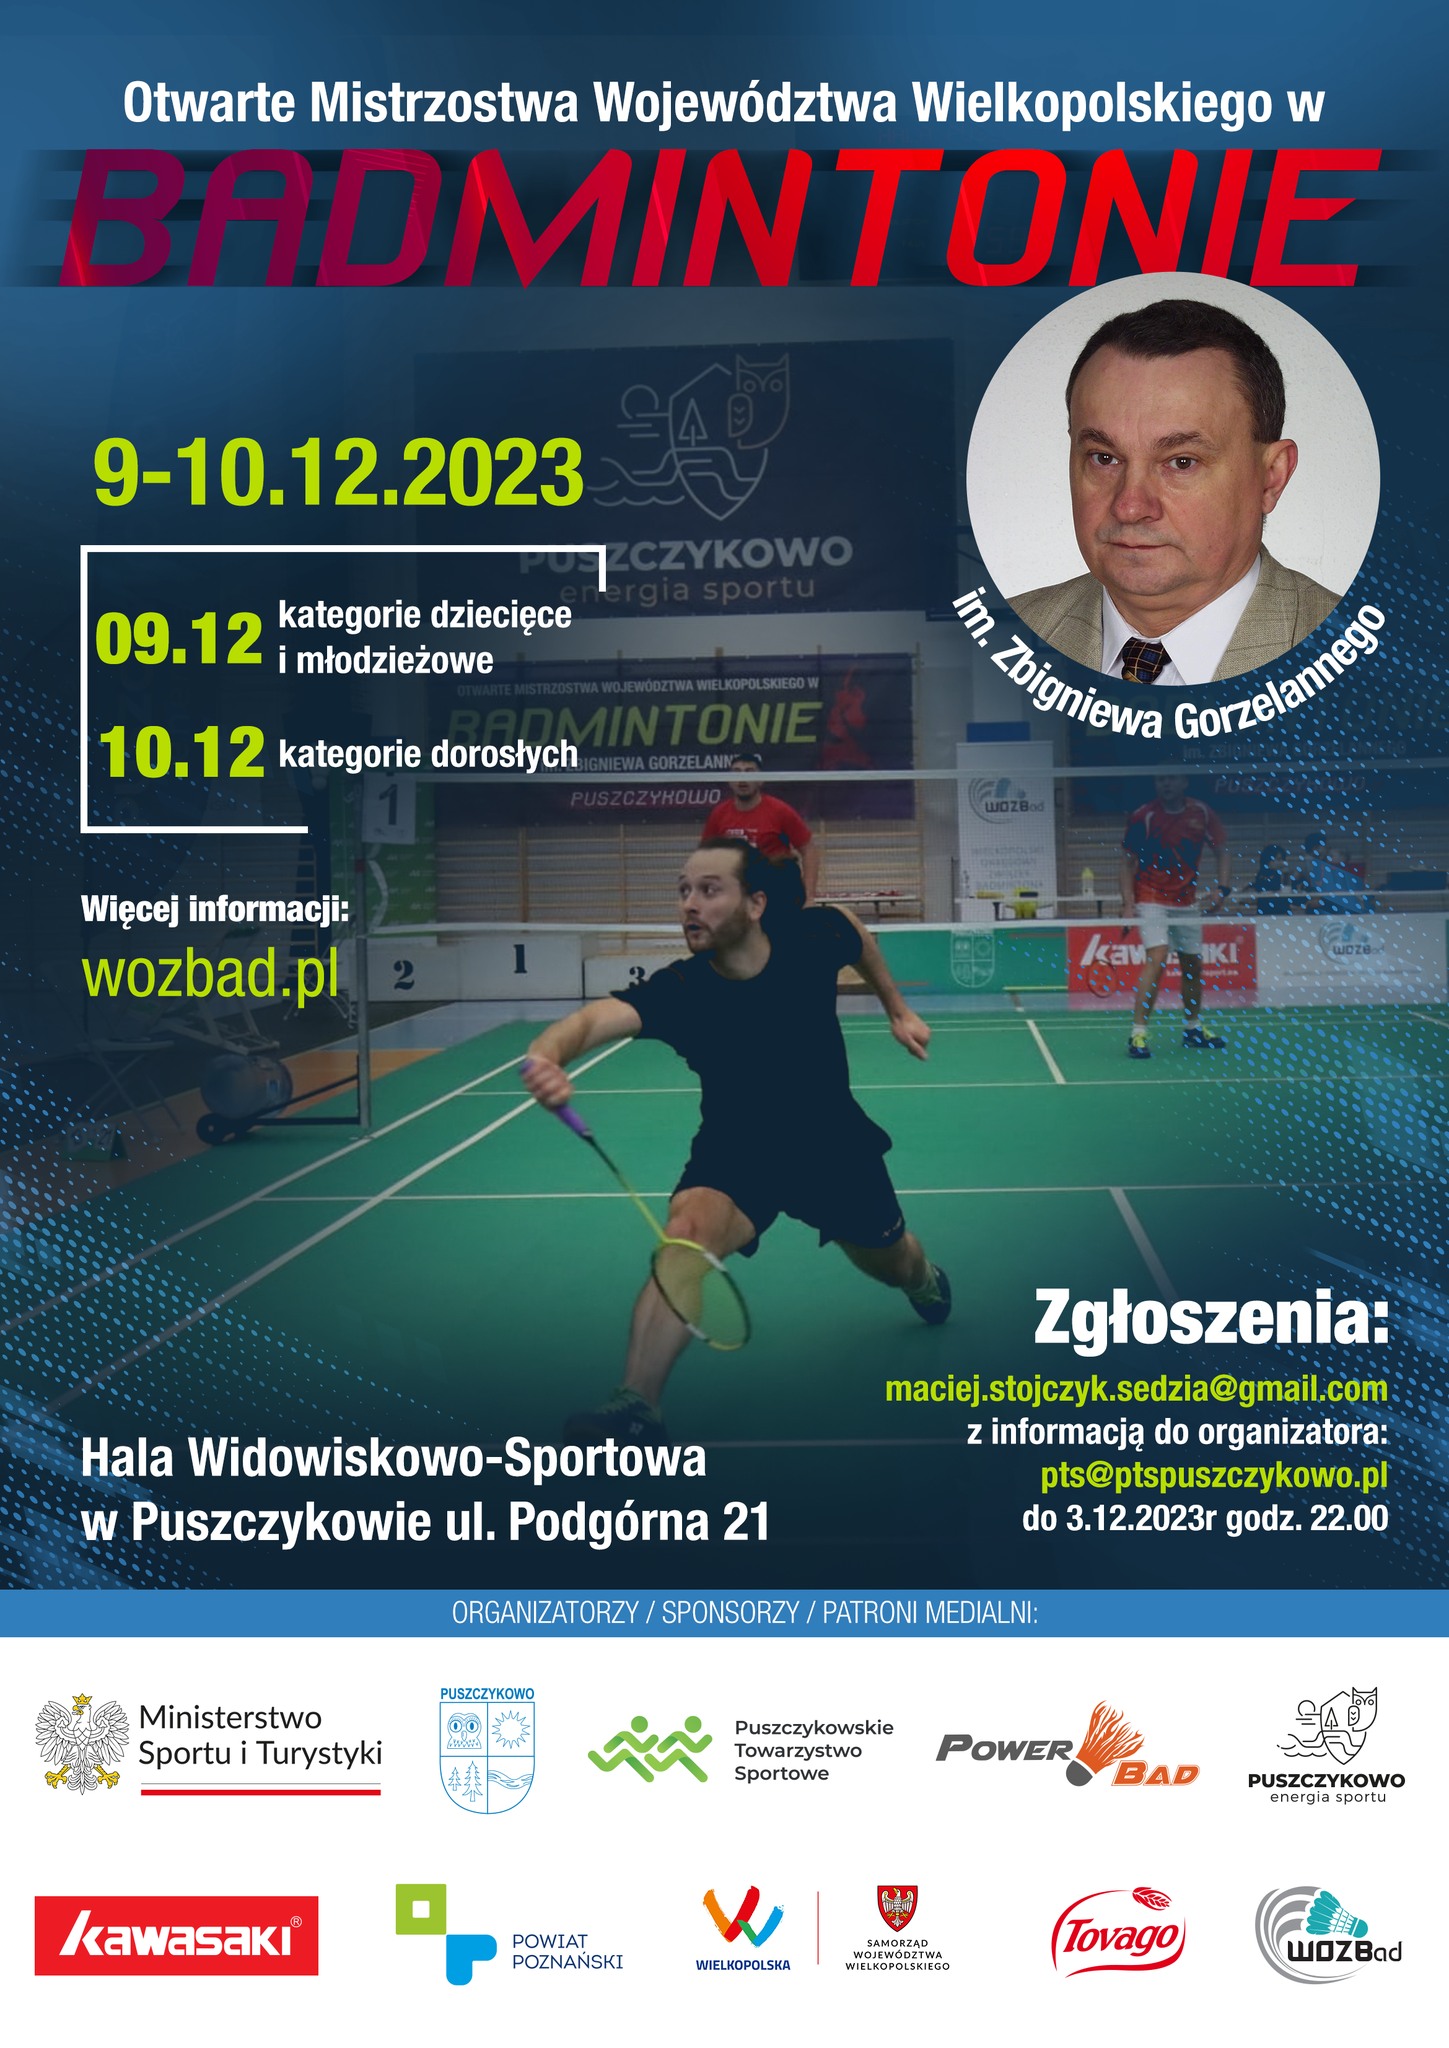 Zapraszamy na Otwarte Mistrzostwa Wlkp. w badmintonie im. Zbigniewa Gorzelannego, które odbędą się w hali widowiskowo-sportowej w Puszczykowie.